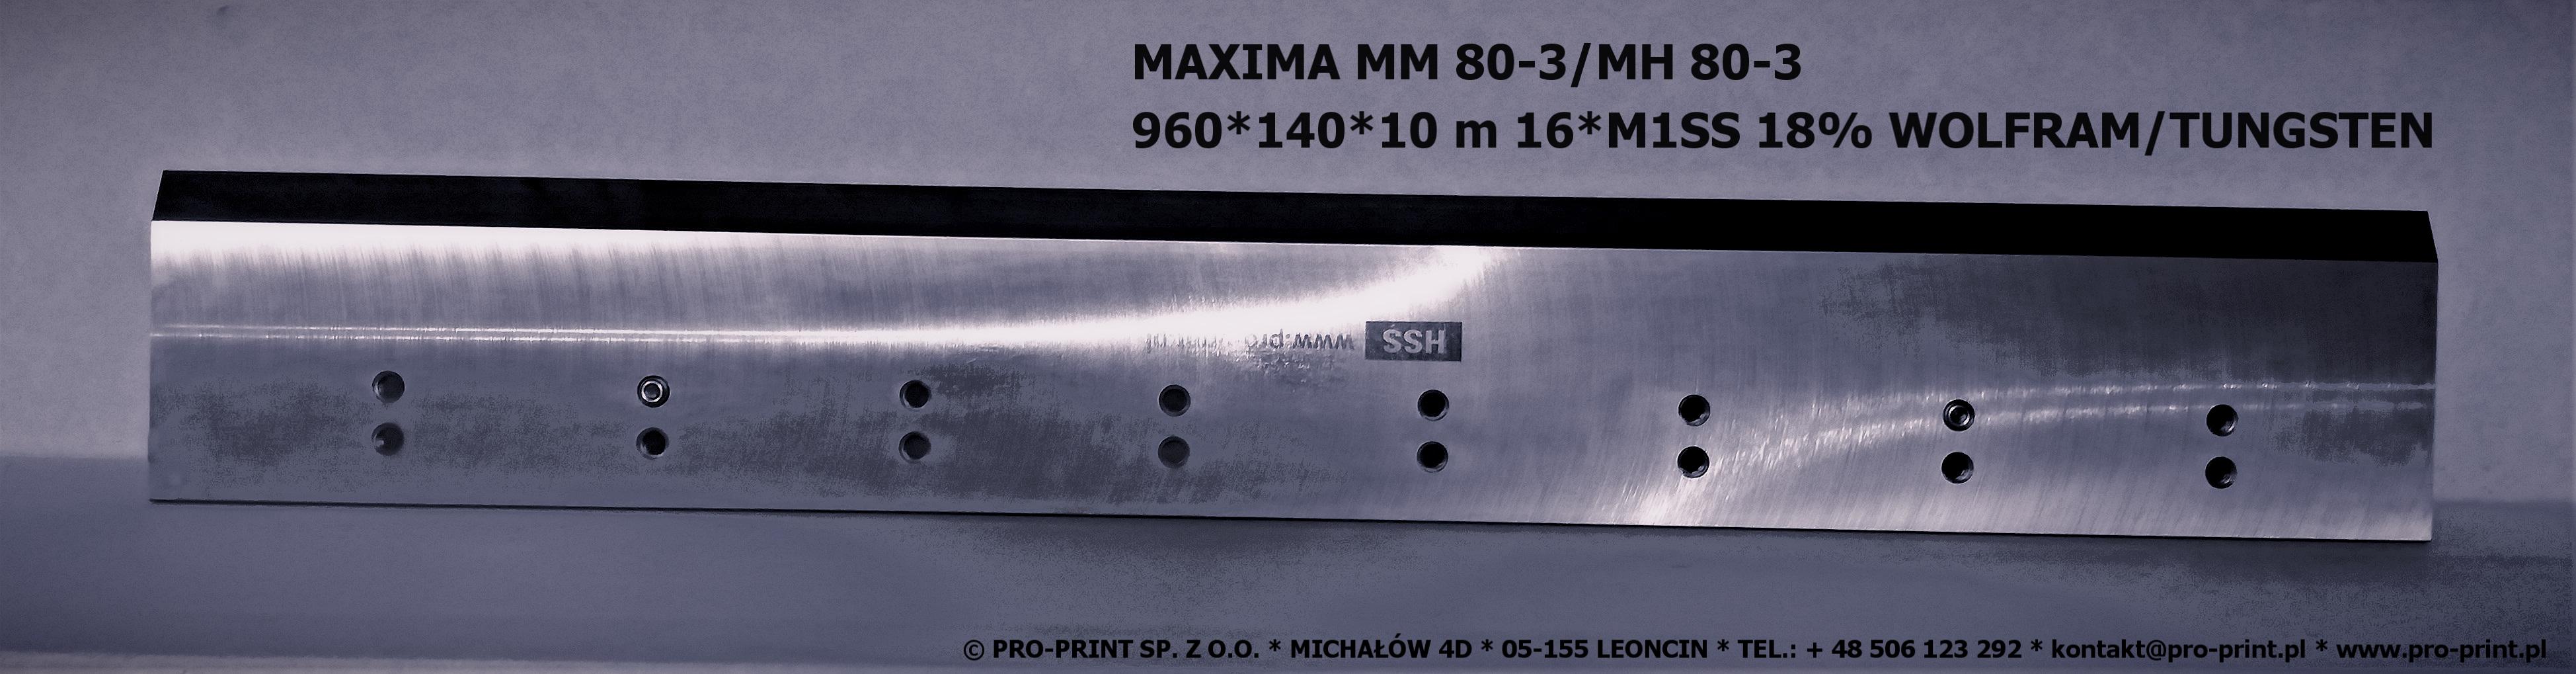 MAXIMA MM - 80 - 3 nóż HSS